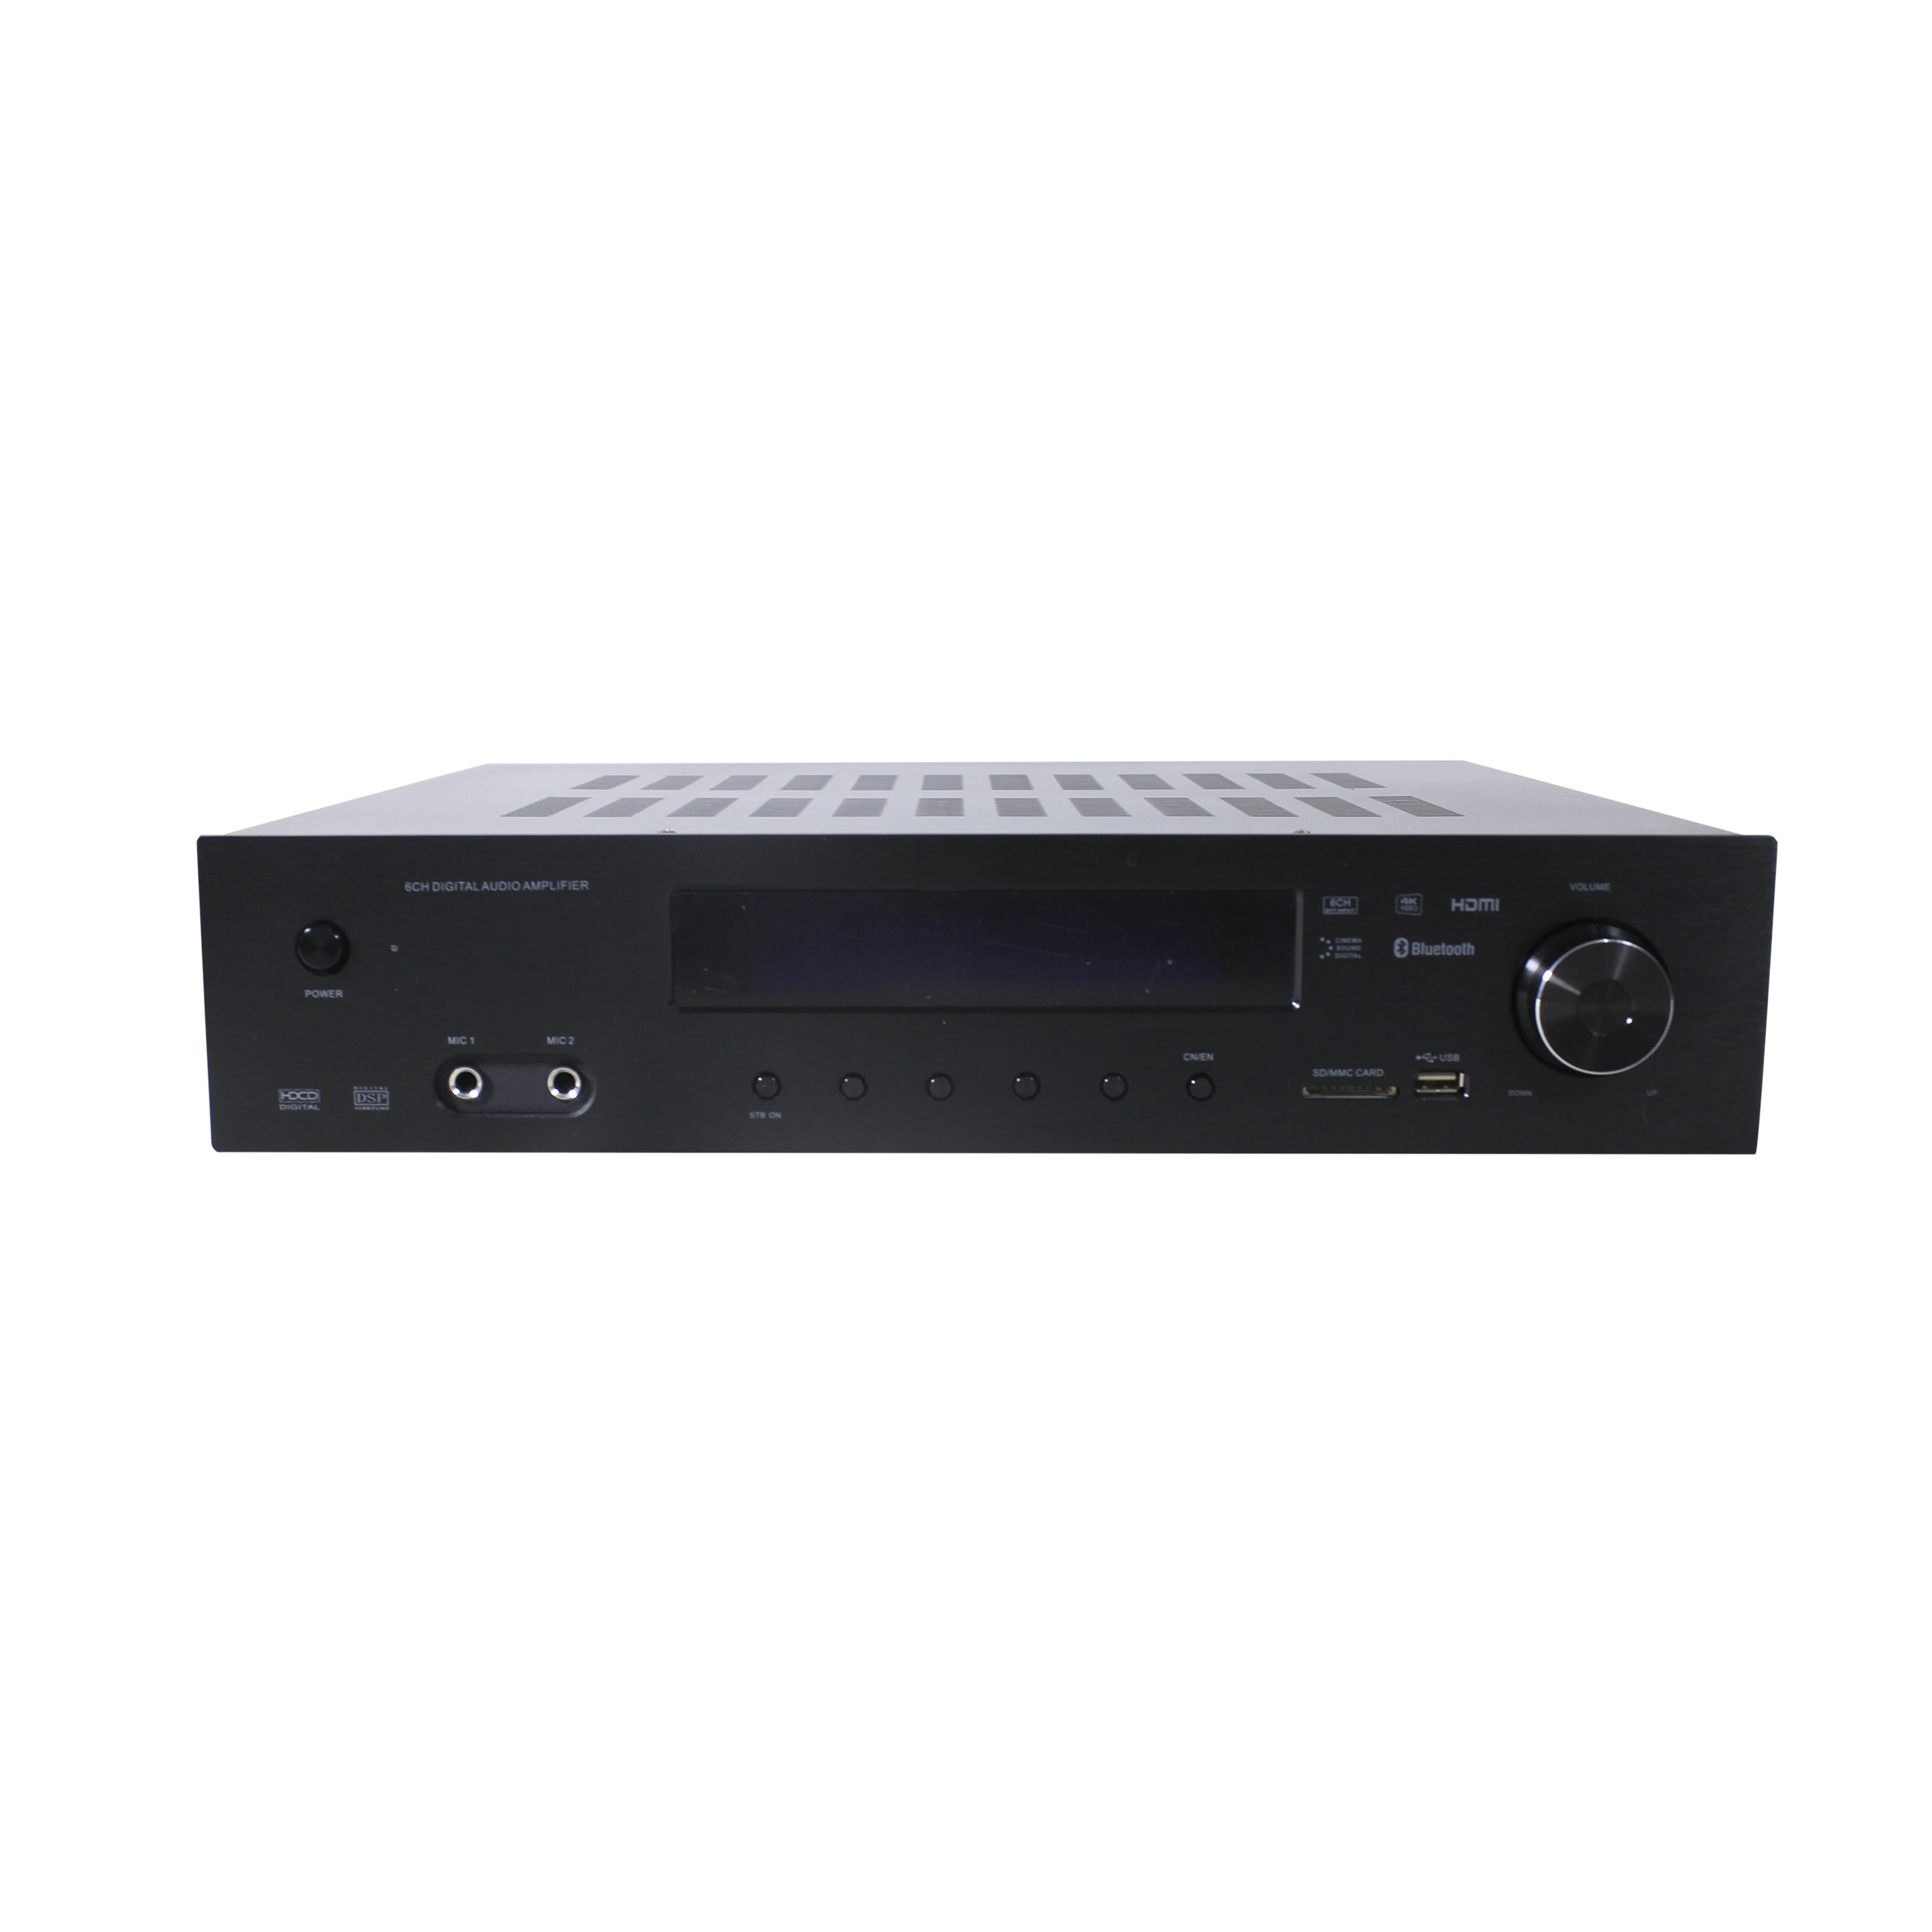 5.1 Home Theater System Bluetooth Power Amplifier Wireless Karaoke Digital Amplifier Lt-9000